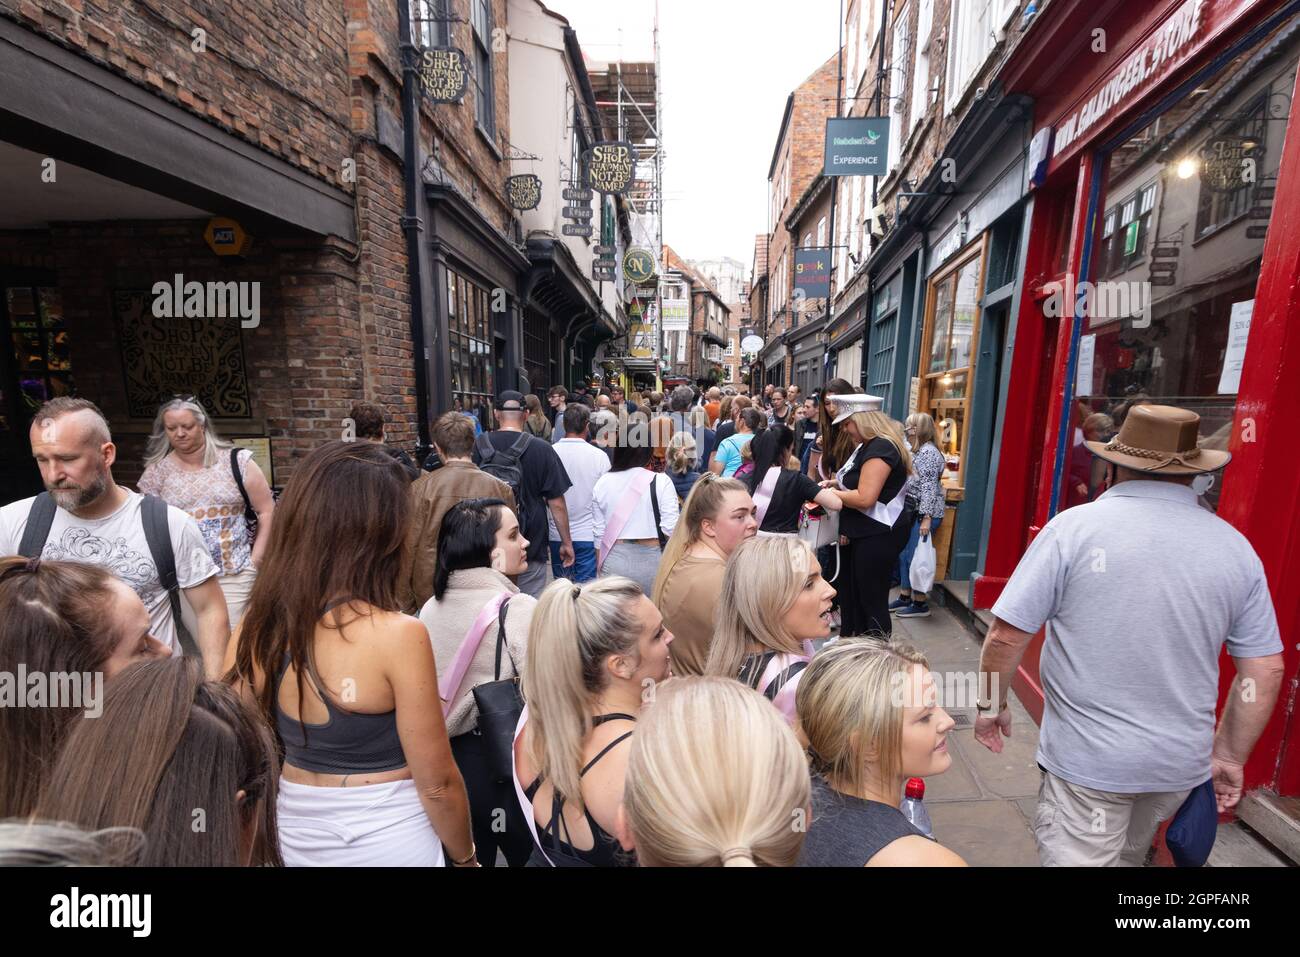 The Shambles, York UK; una strada medievale affollata da una folla di turisti, il centro di York, York UK Foto Stock